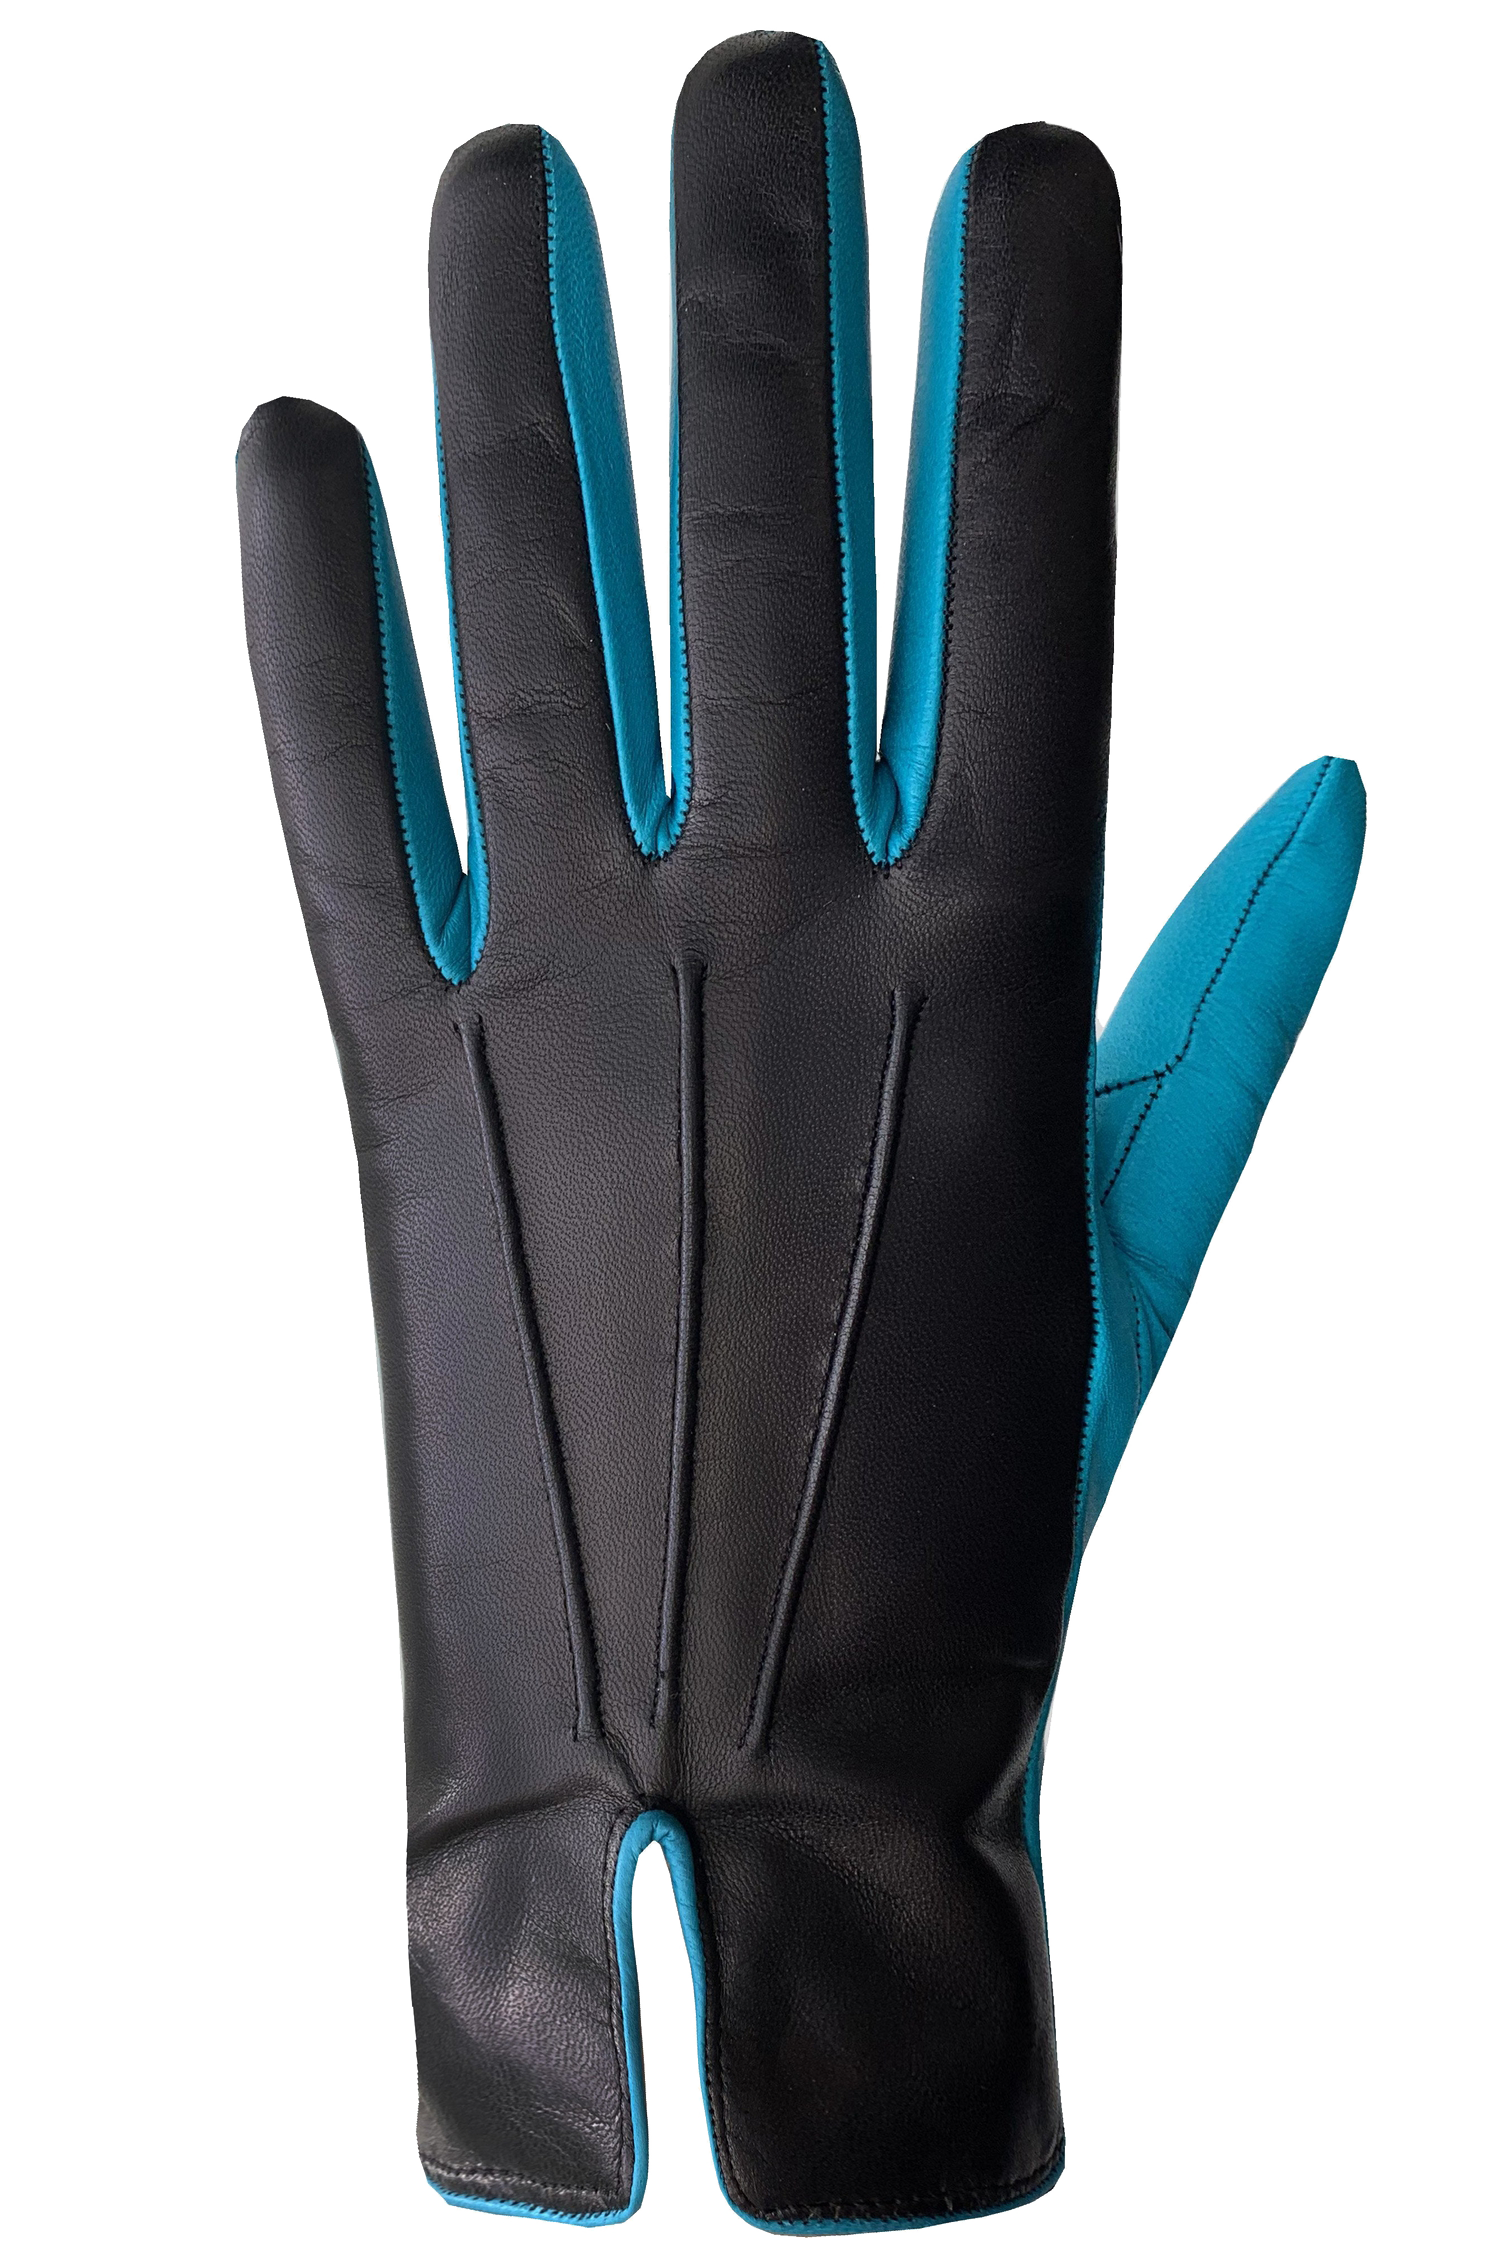 Ravenna Gloves - Women-Glove-Auclair-7.0-BLACK/PETROL-Auclair Sports